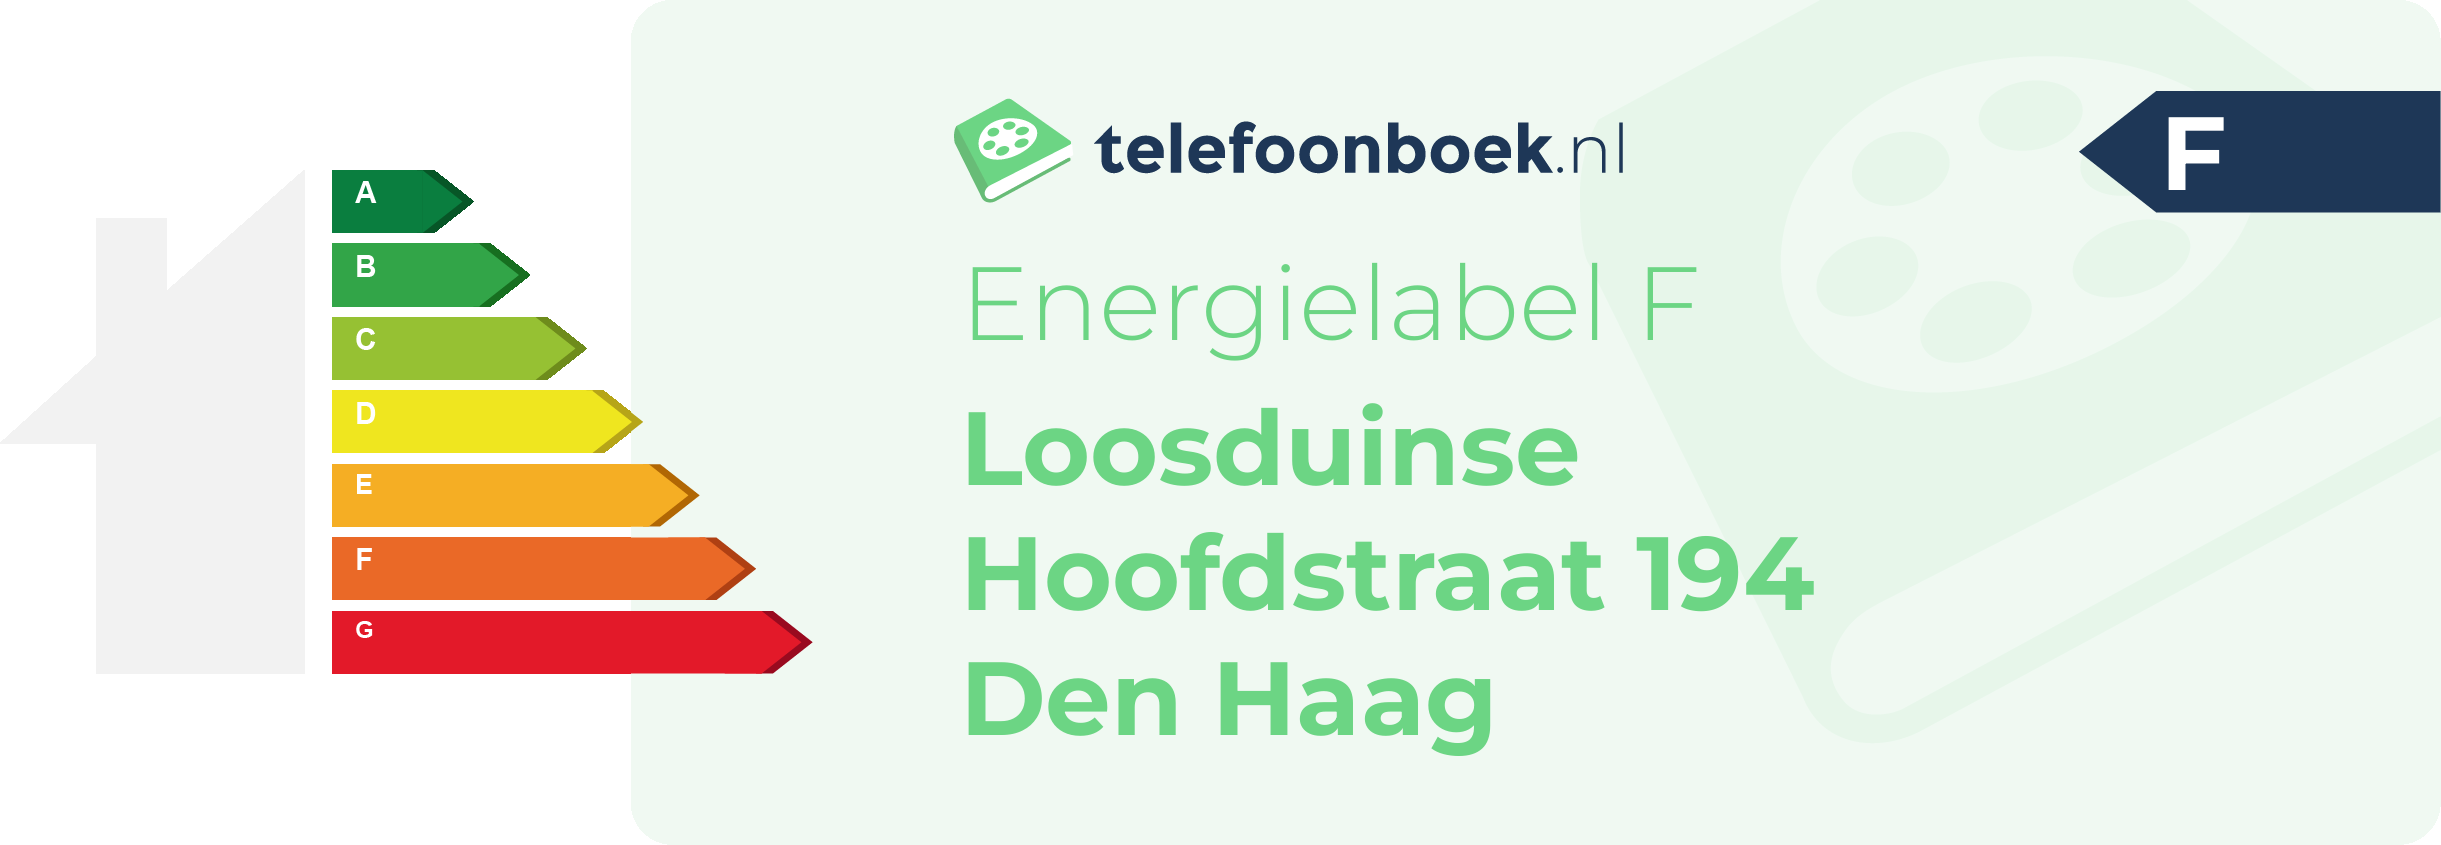 Energielabel Loosduinse Hoofdstraat 194 Den Haag